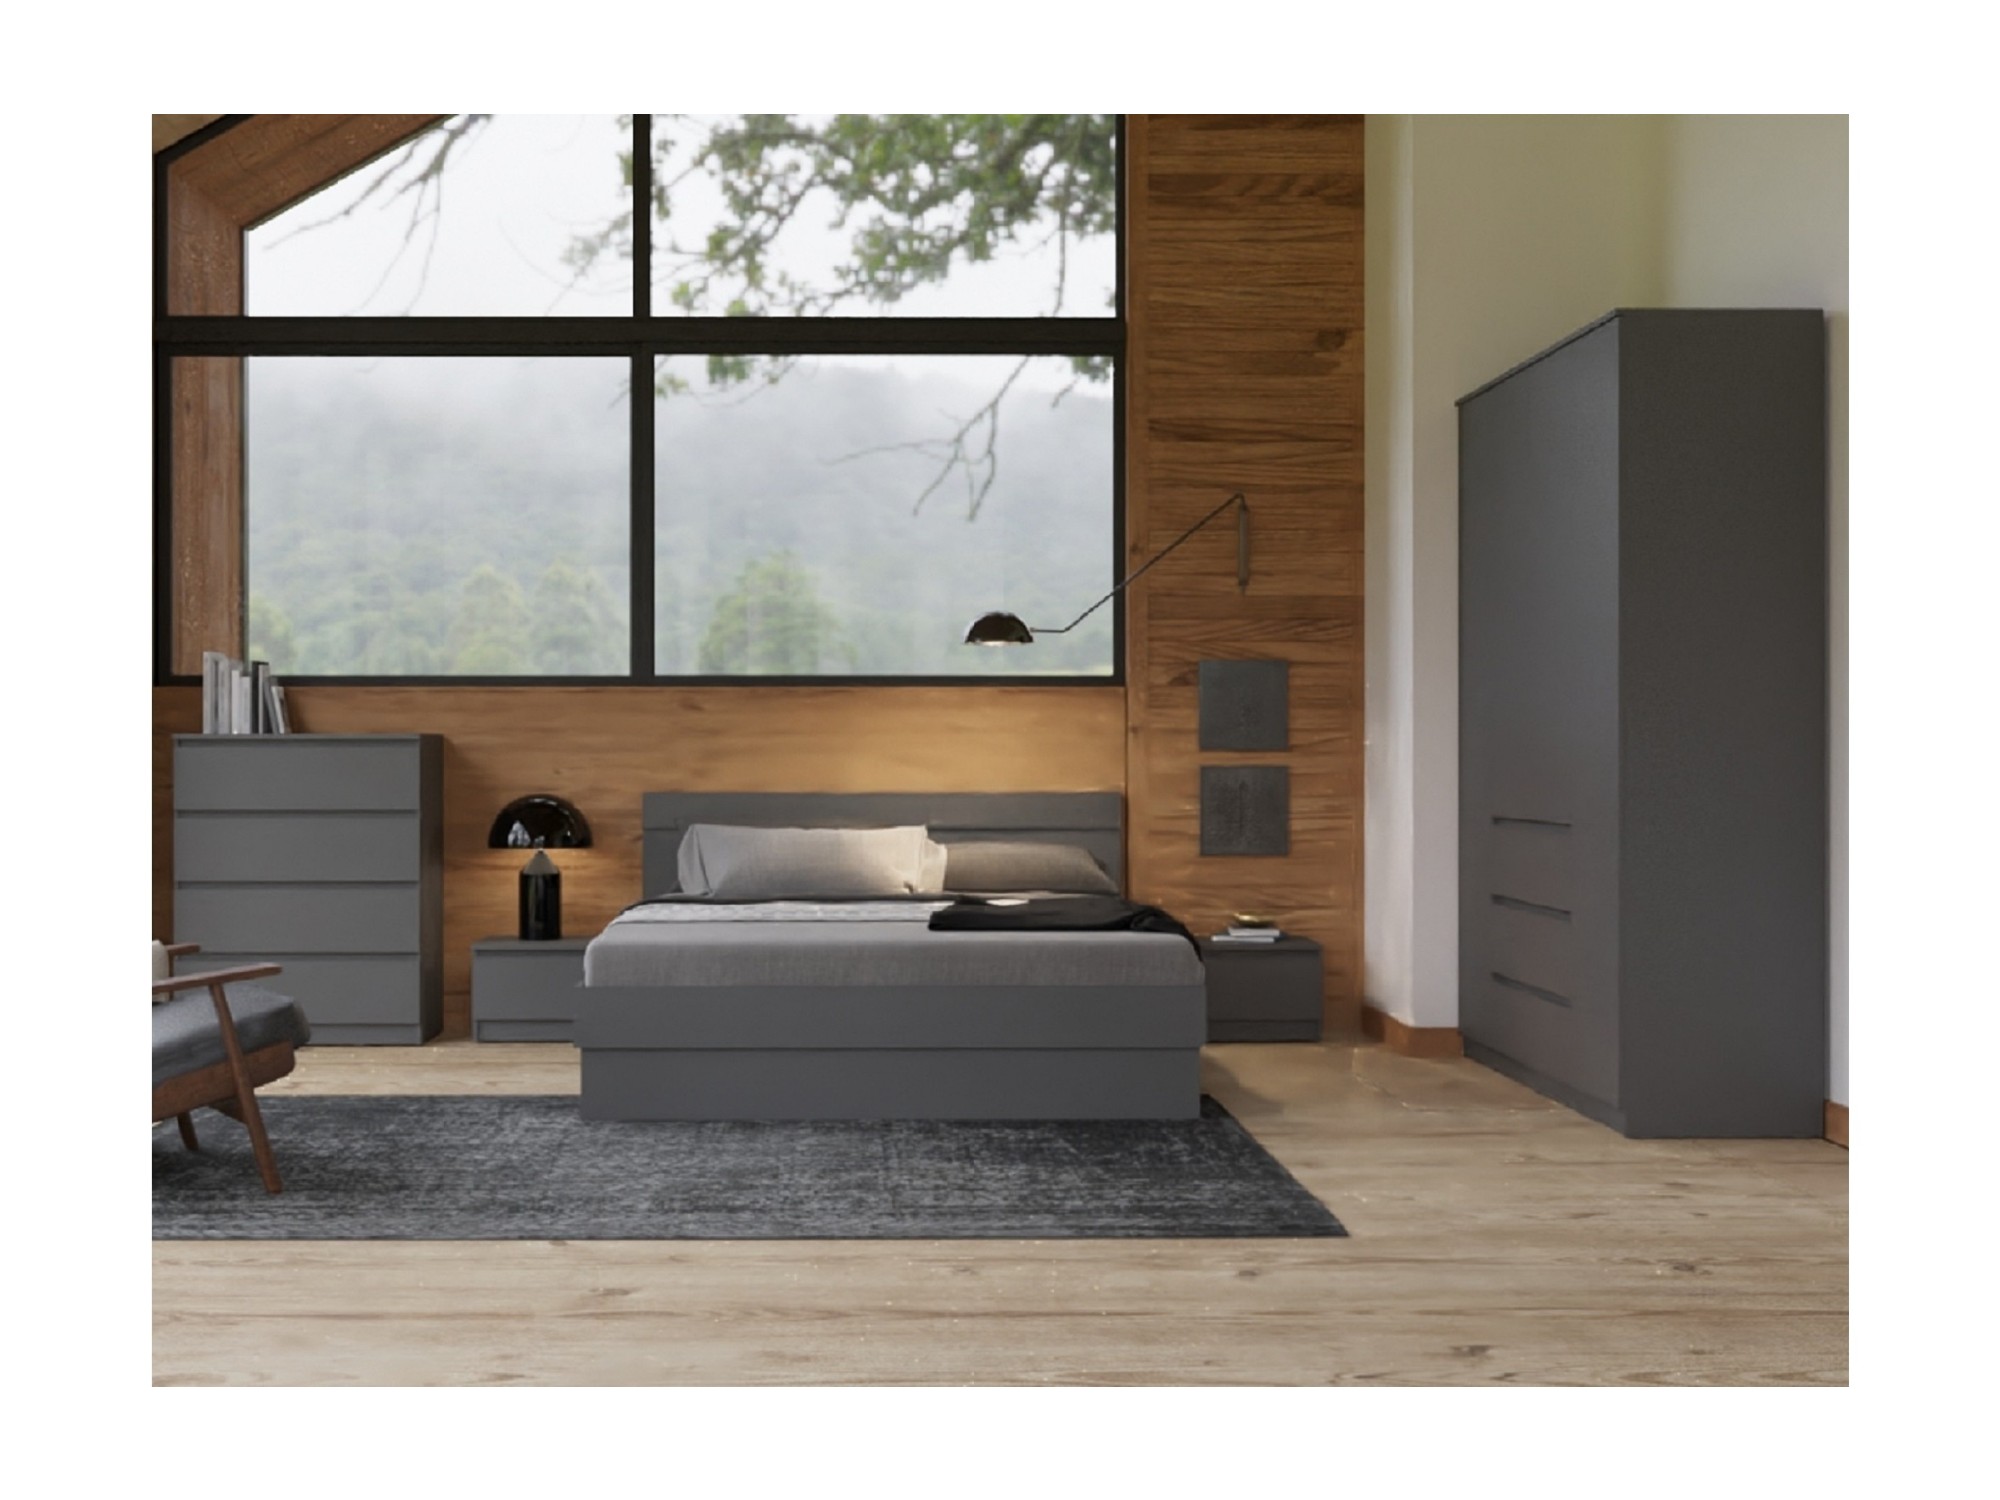 Модульная спальня Челси, комплектация 1 (Графит, Графит) Черный, ЛДСП модульная гостиная челси графит графит графит черный лдсп